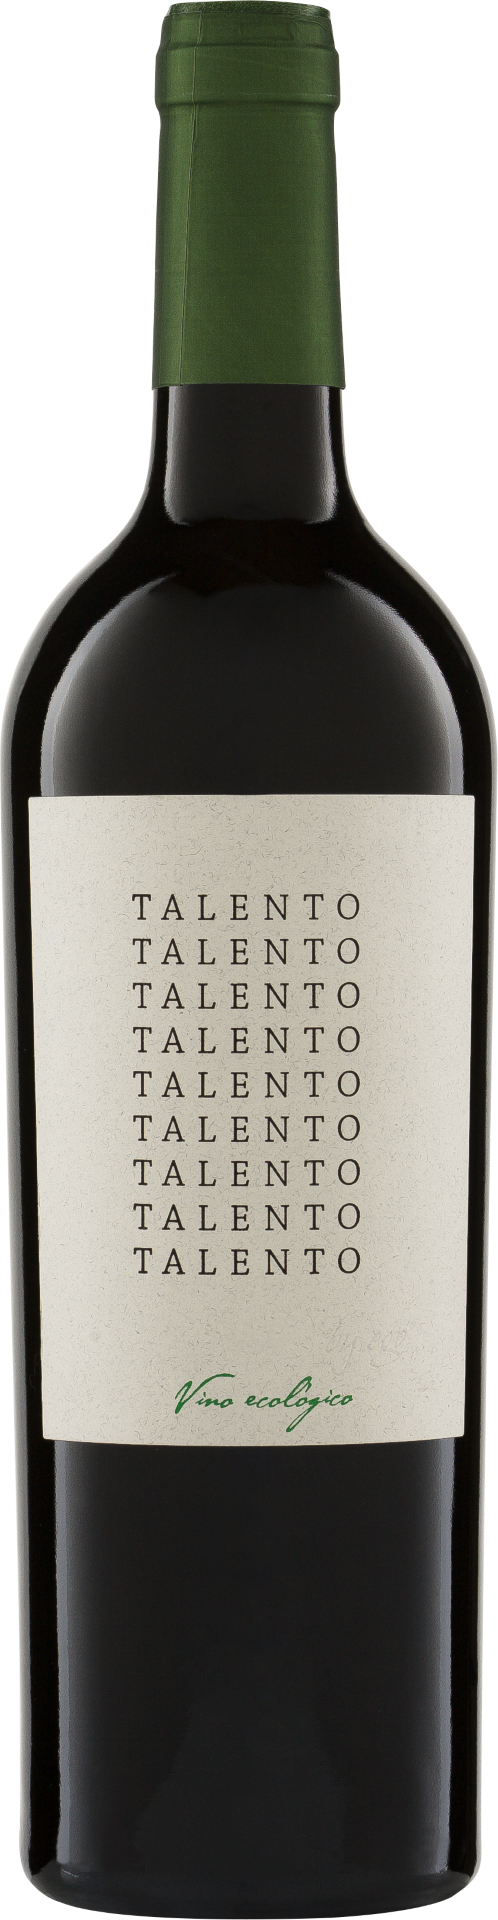 Monastrell Talento Jumilla 2020 DO Bio Biowein Weinhandel 